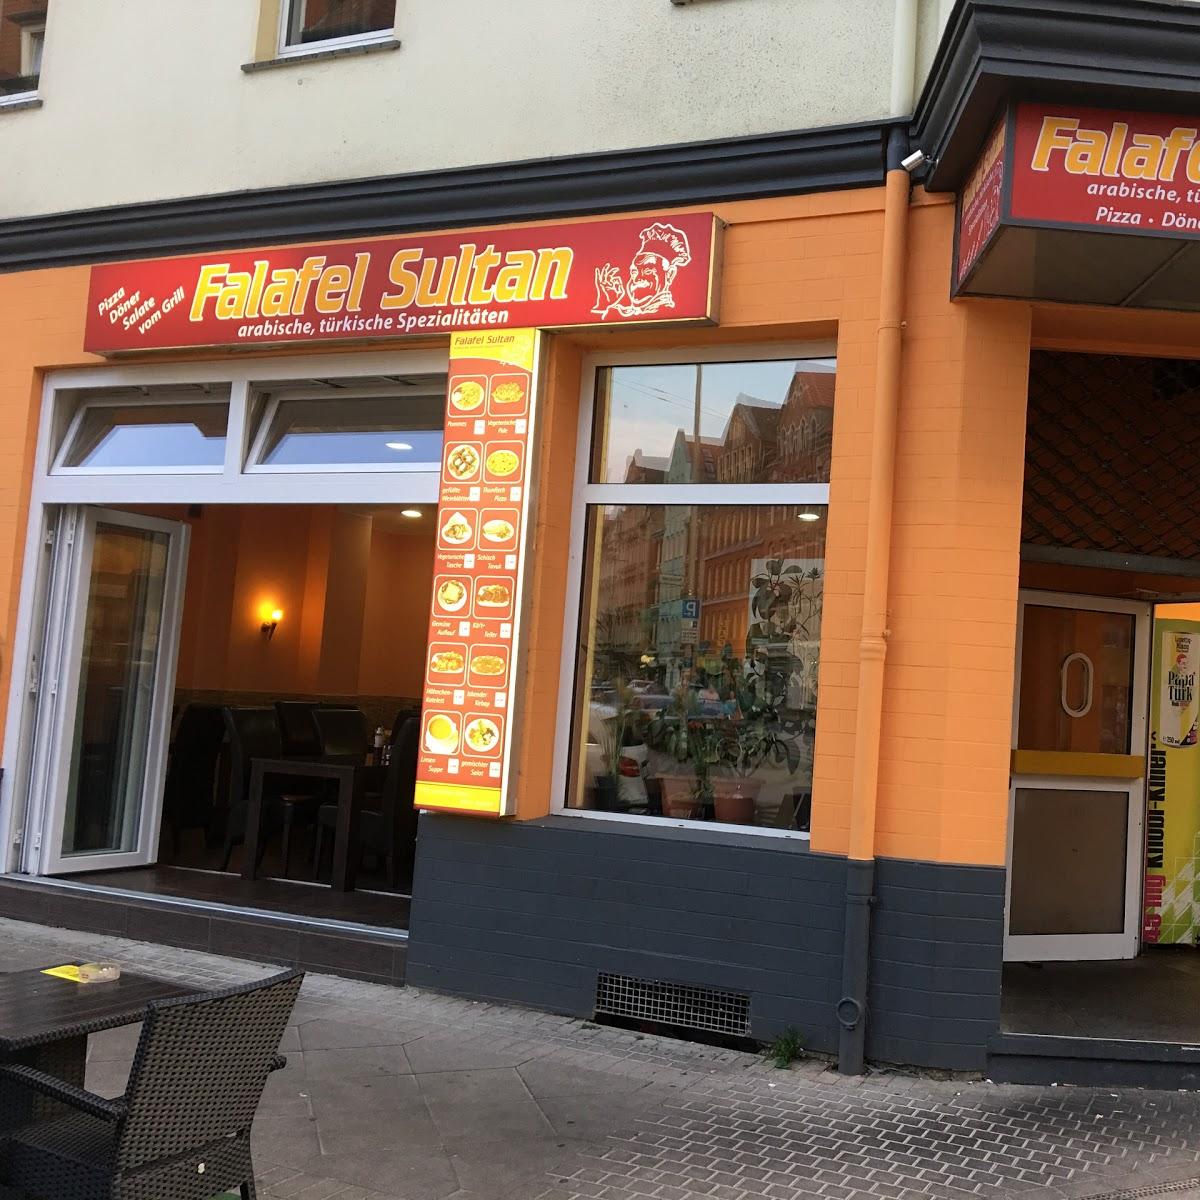 Restaurant "Falafel Sultan" in Hannover